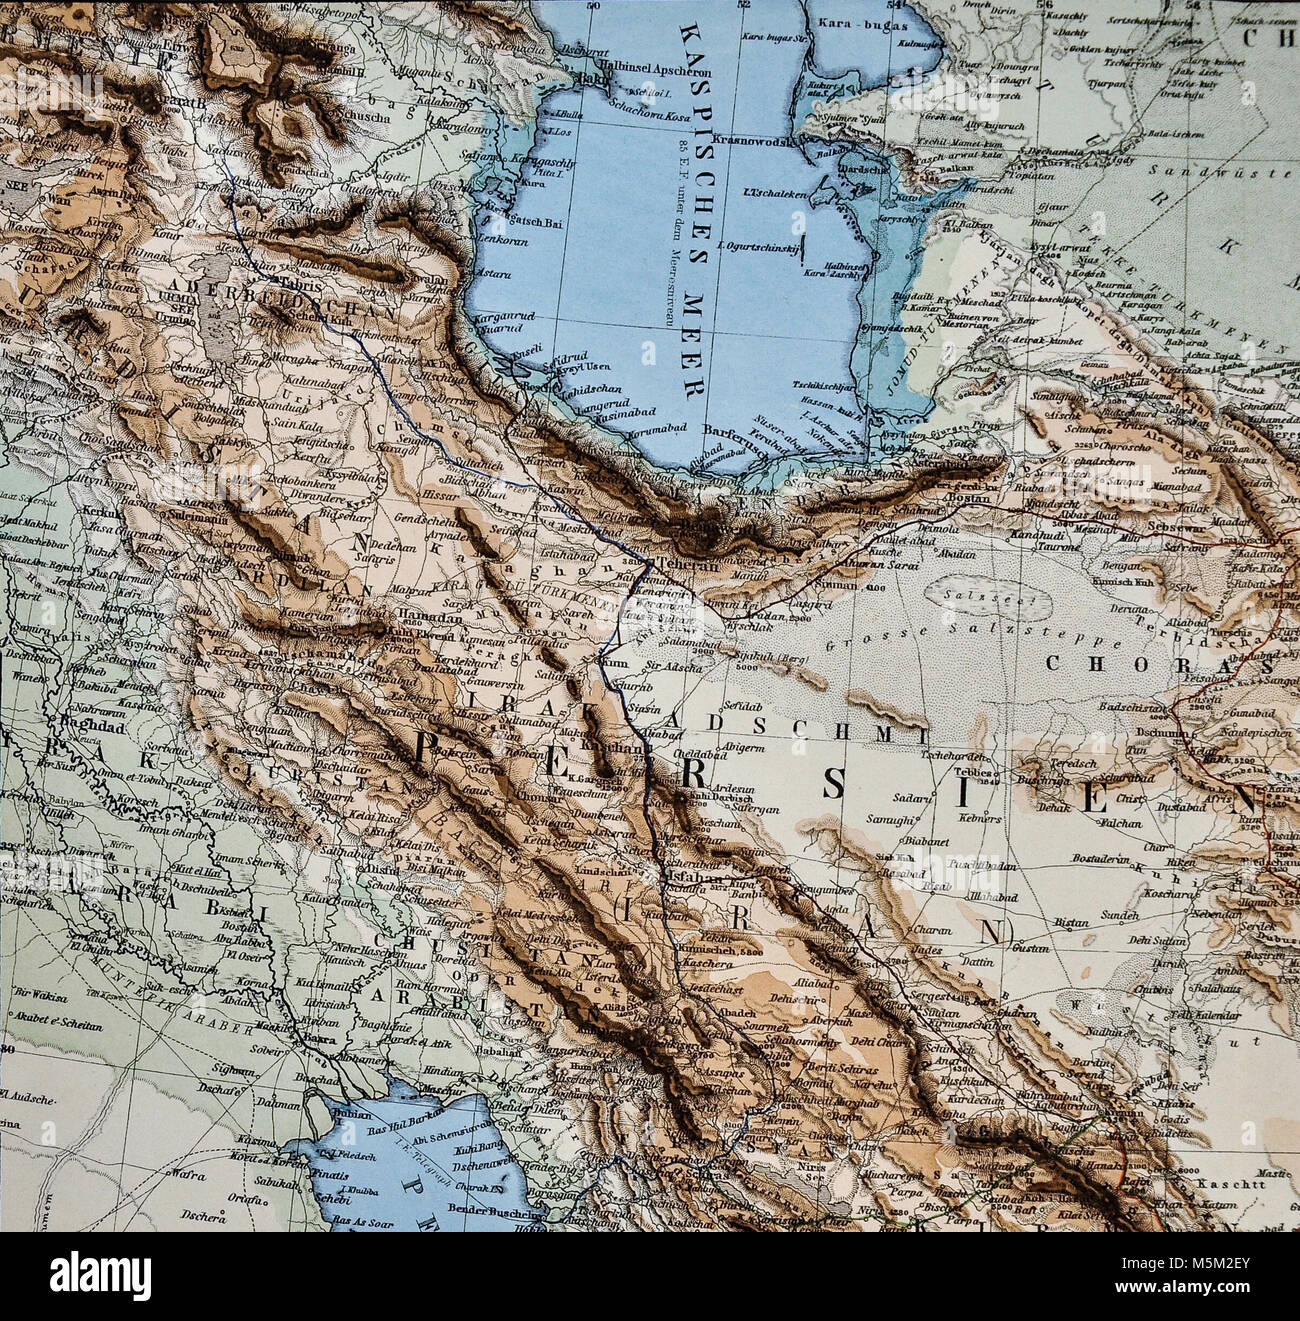 Kurdistan map hi-res stock photography and images - Alamy